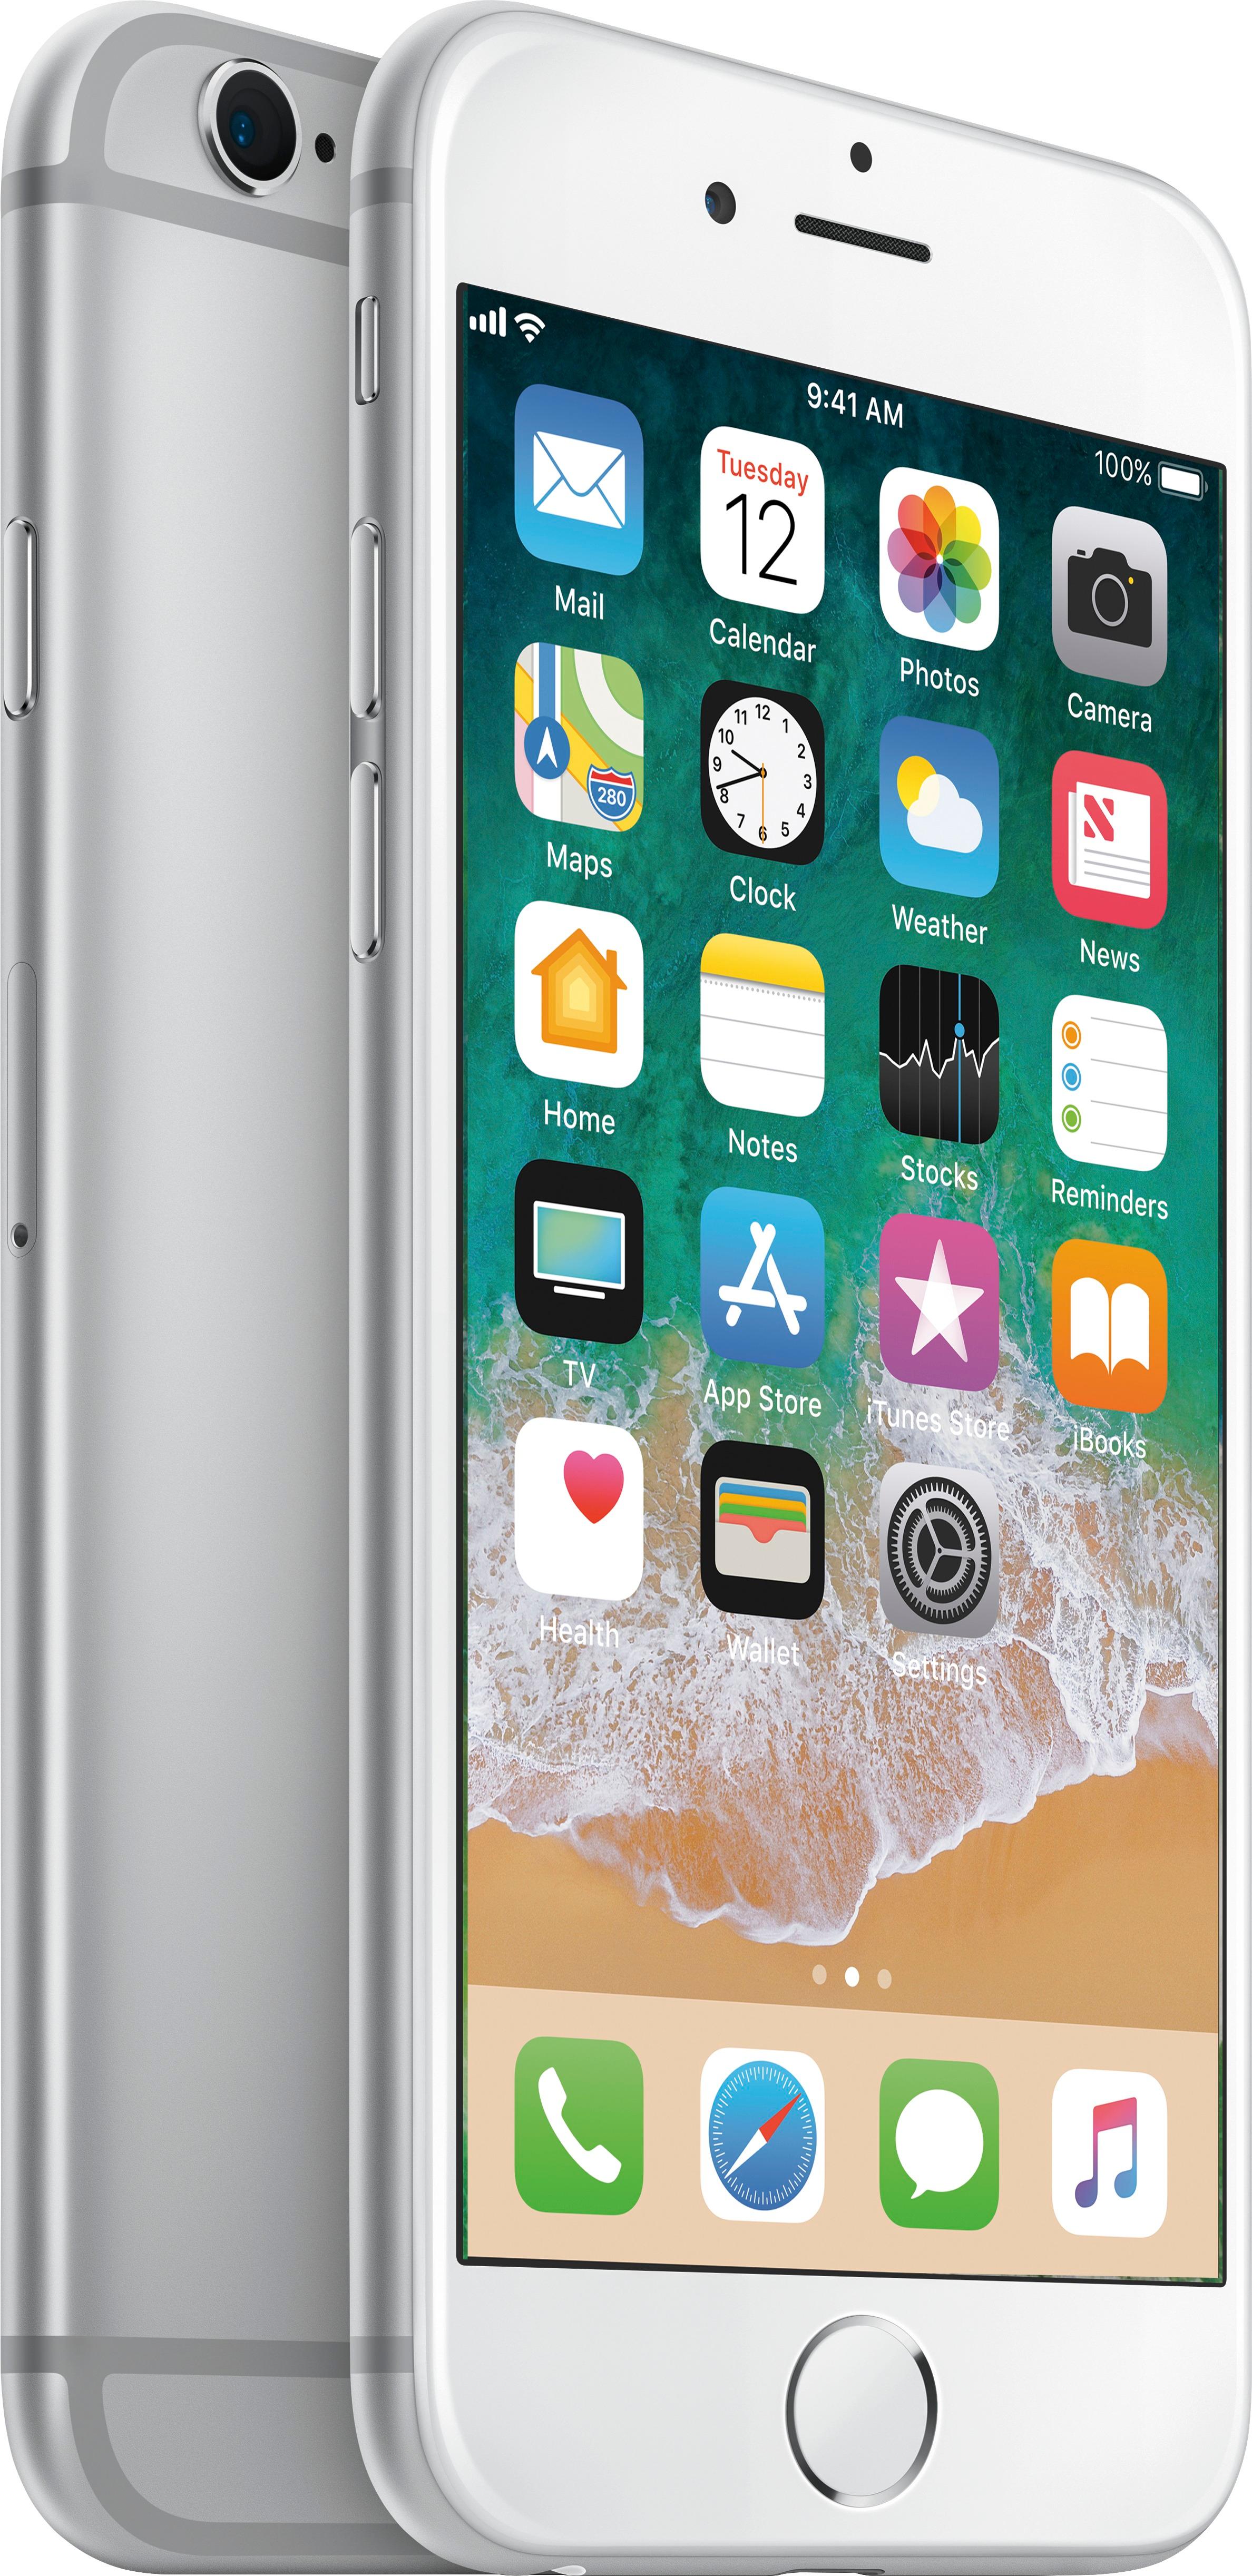 スマートフォン/携帯電話 スマートフォン本体 Best Buy: Apple iPhone 6s 16GB Silver (AT&T) MKQ62LL/A